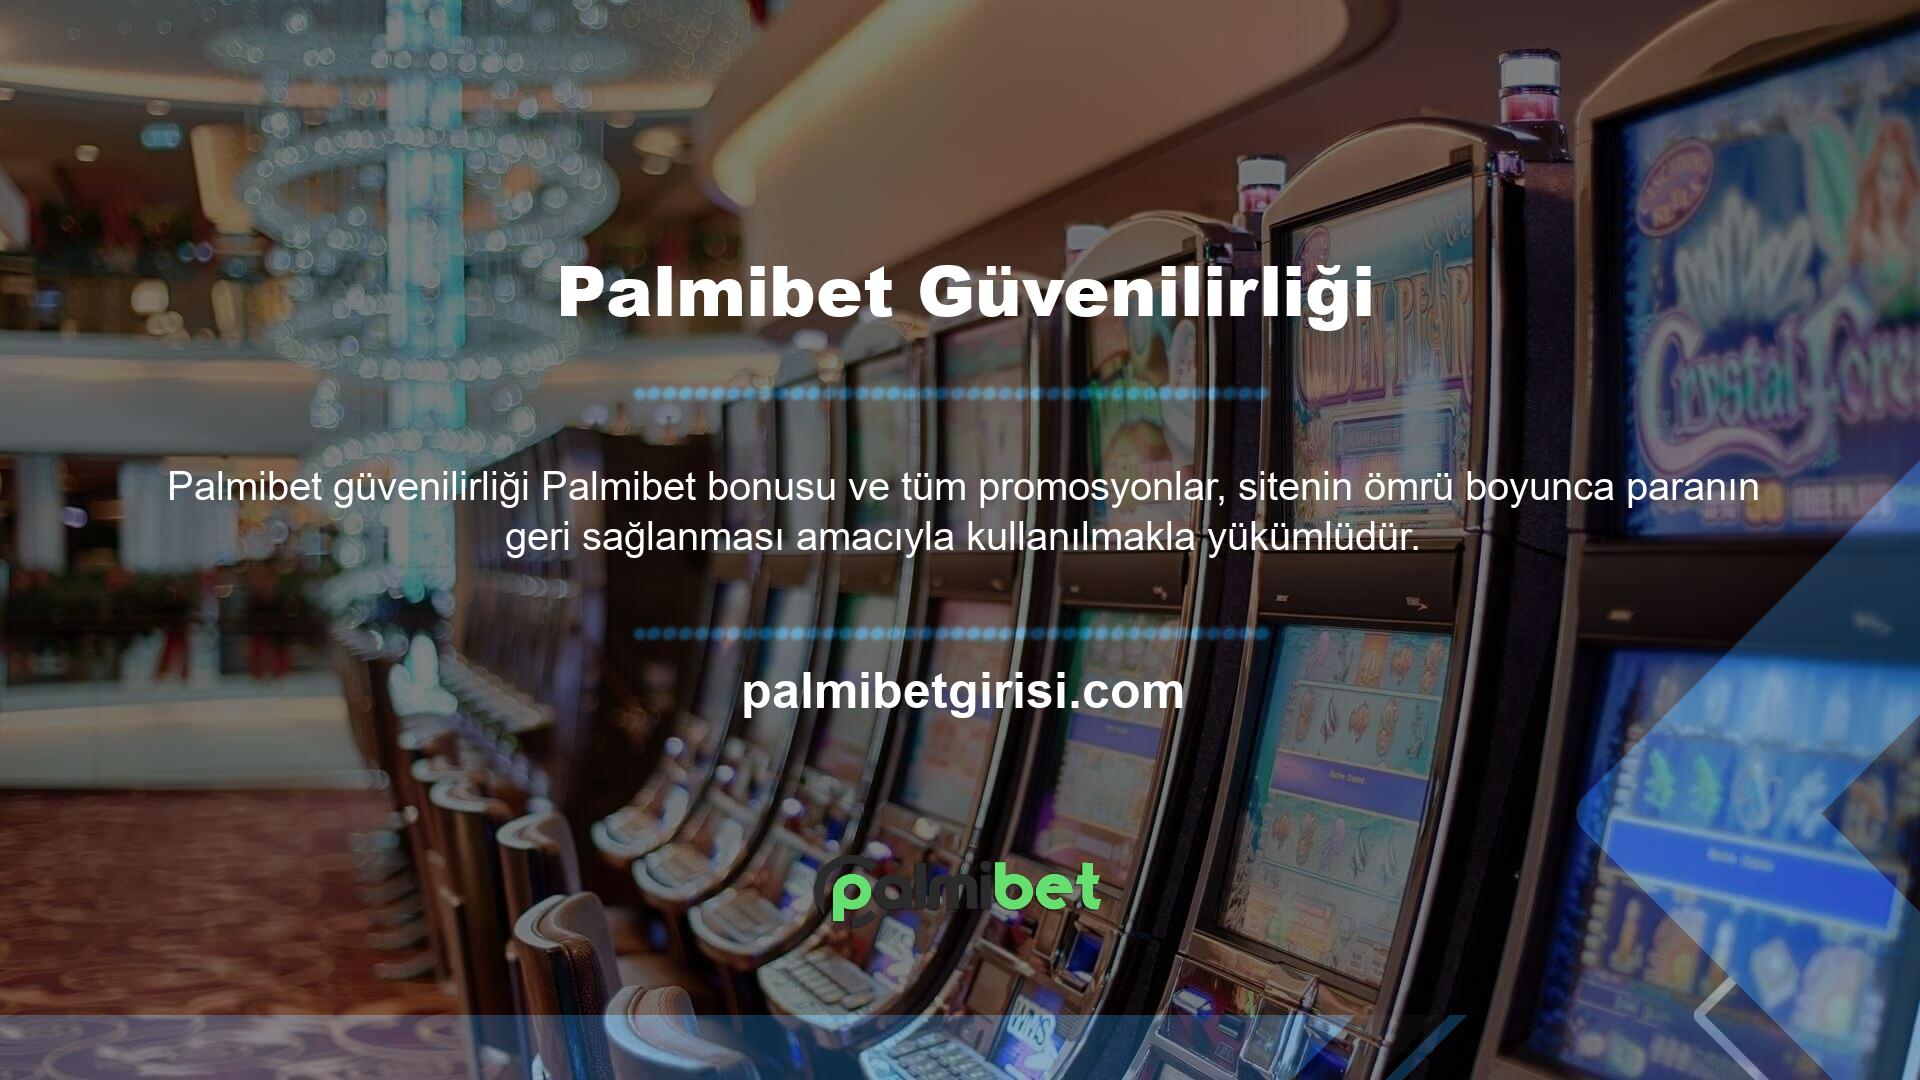 Çevrimiçi Casino ve Casino endüstrisi, Palmibet web siteleri tarafından etkin bir şekilde sunulmaktadır